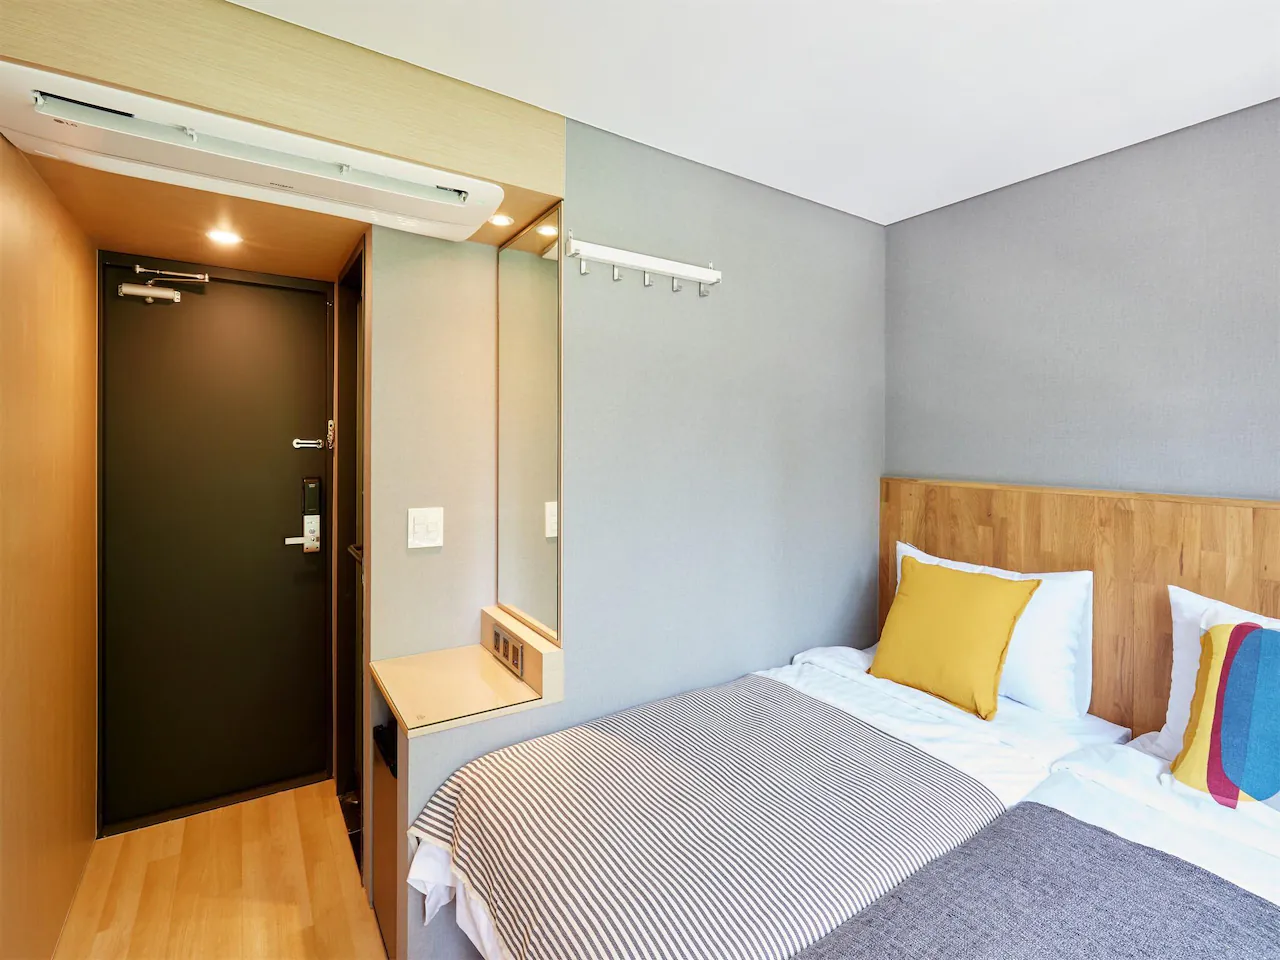 Hostel CLEO Seoul Hongdae โรงแรมสุดเก๋ในย่านฮงแด เริ่มต้น 2,3xx บาท/คืน!